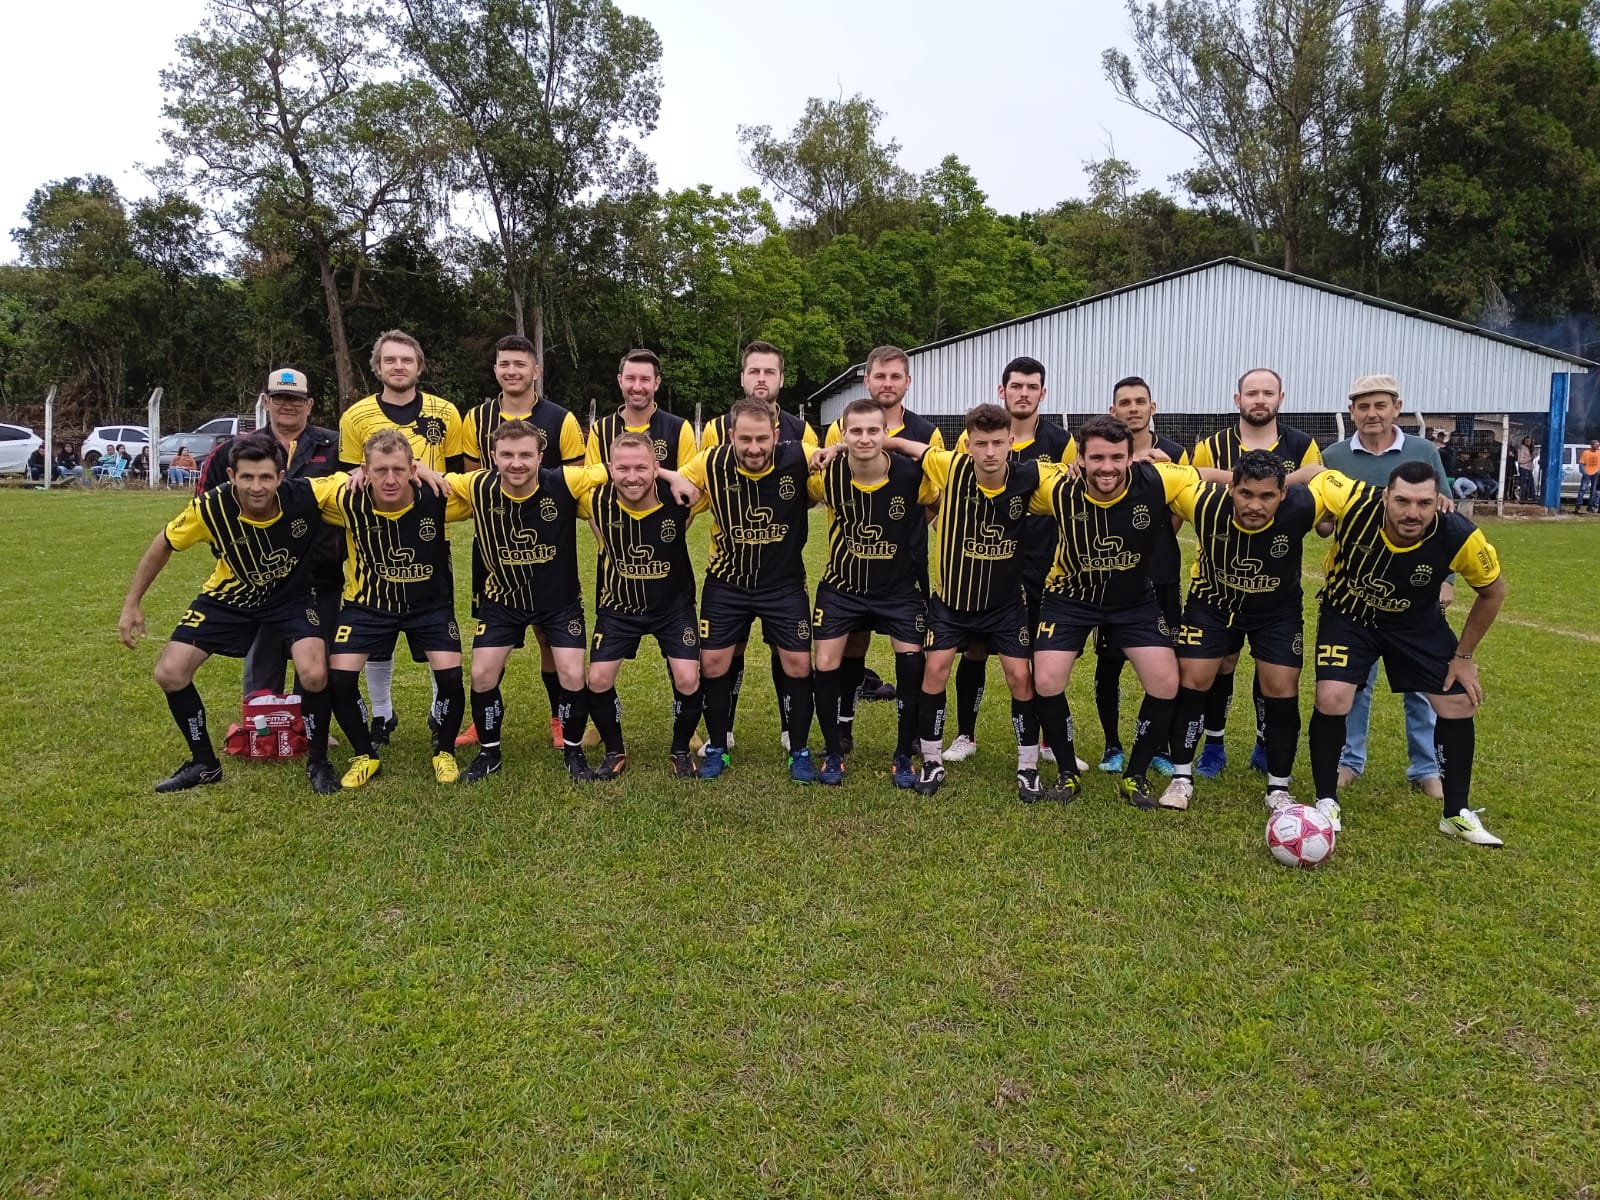 Campeonato municipal de futebol 7 integra comunidade de Ubiretama